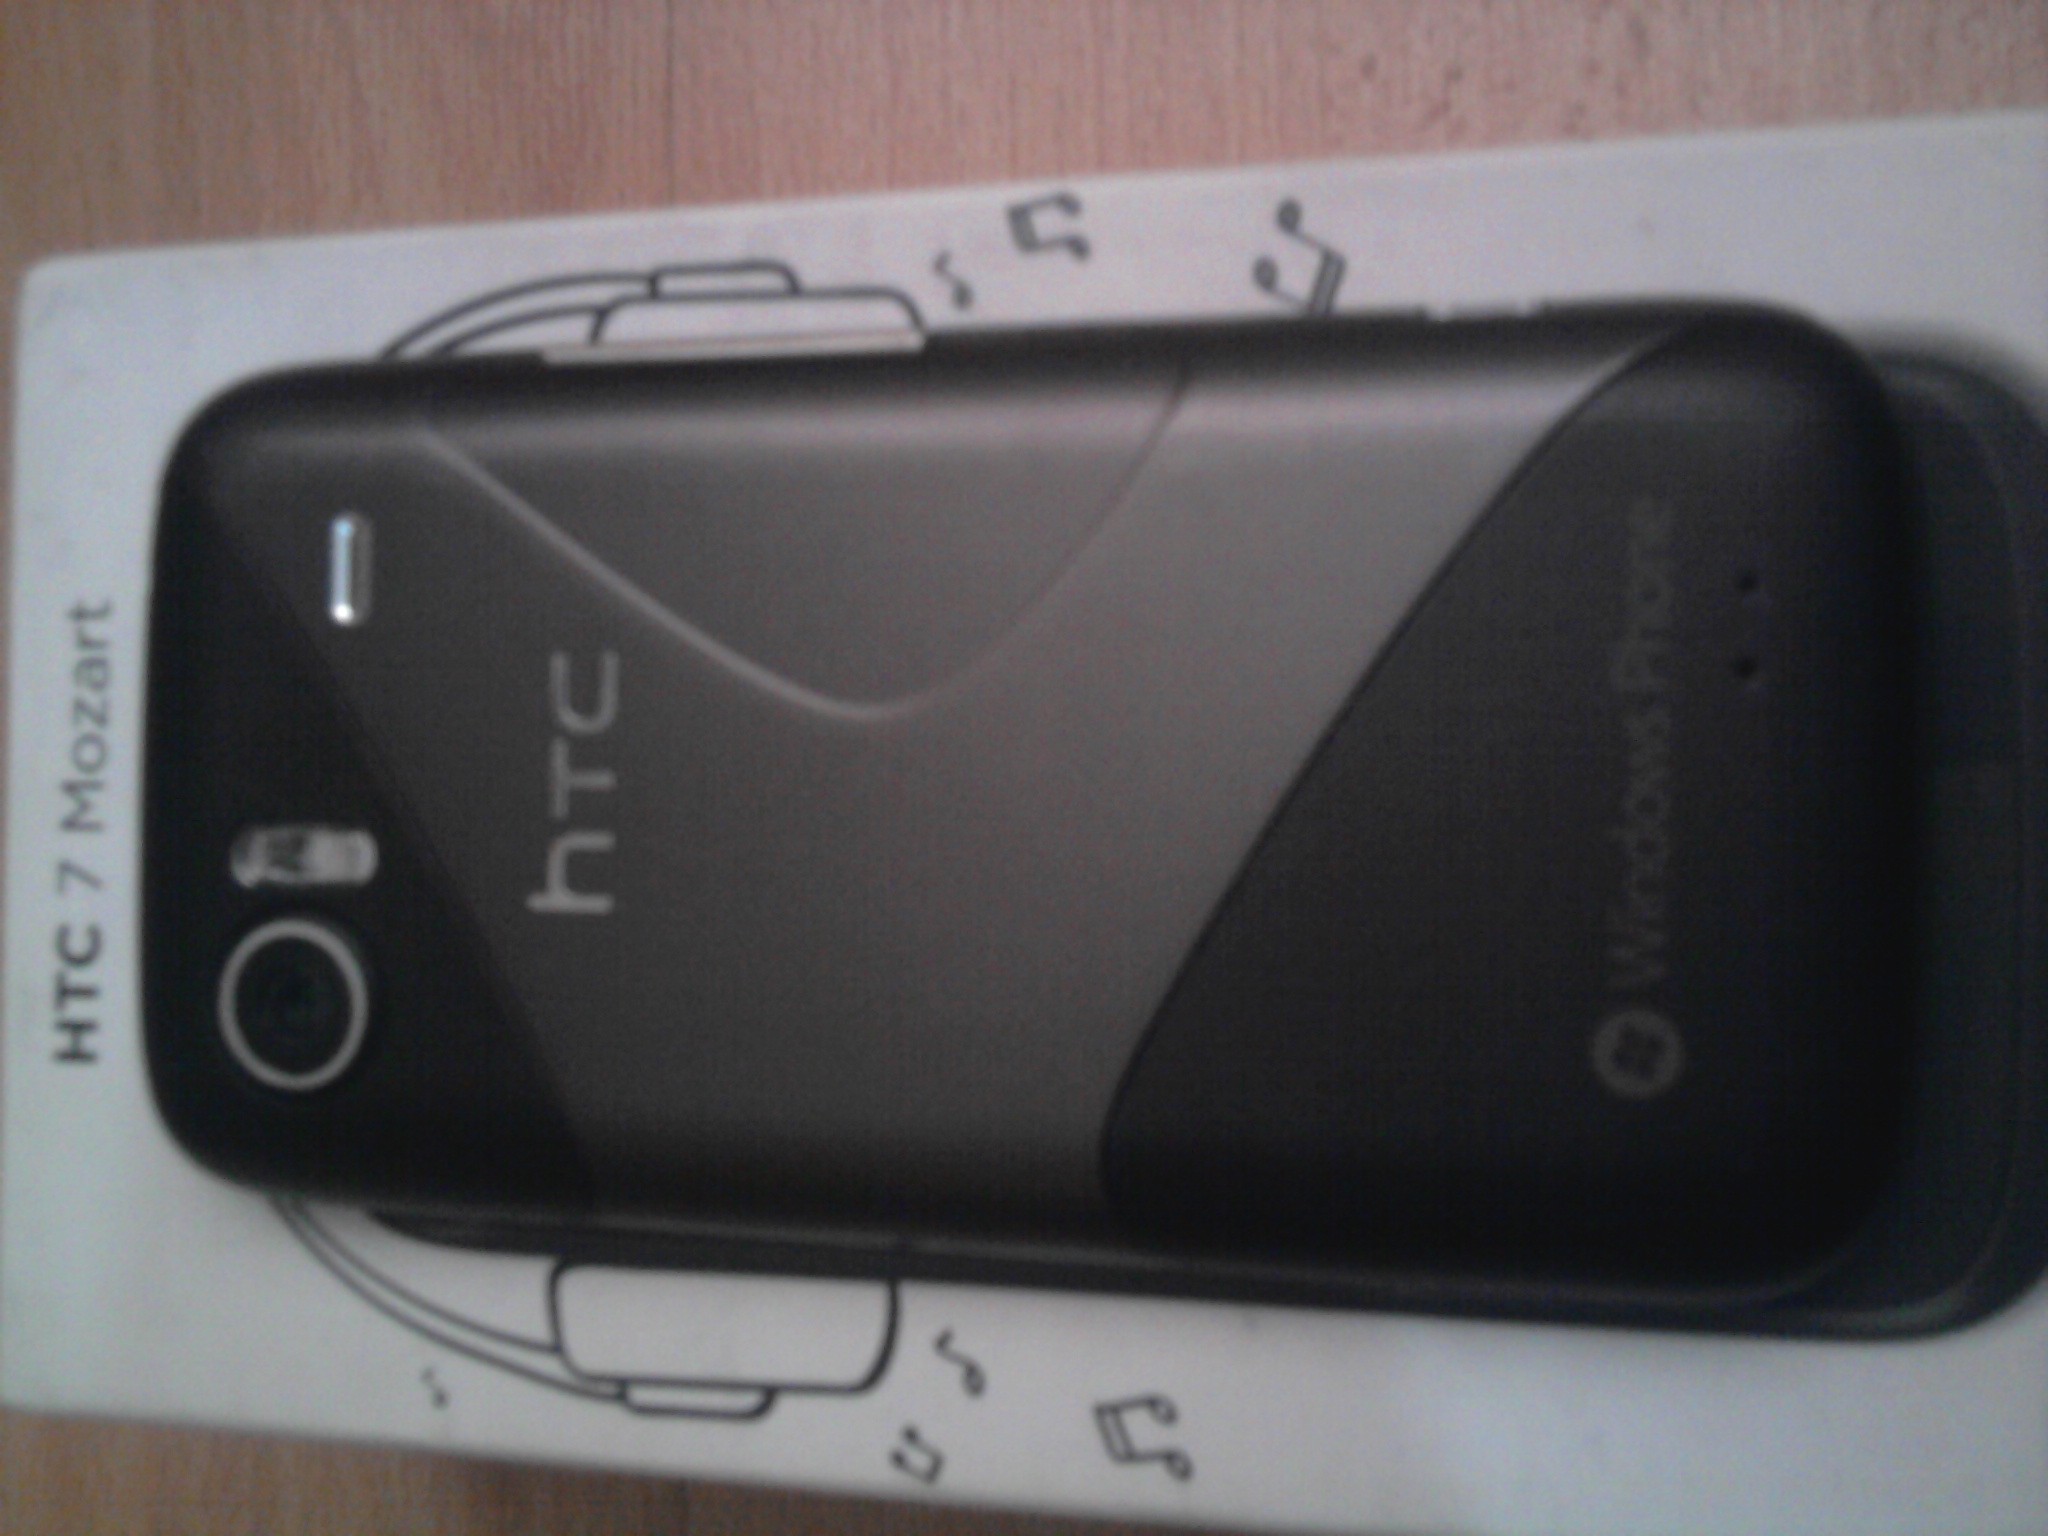  HTC Mozart 7 KUTULU TAKAS OLUR